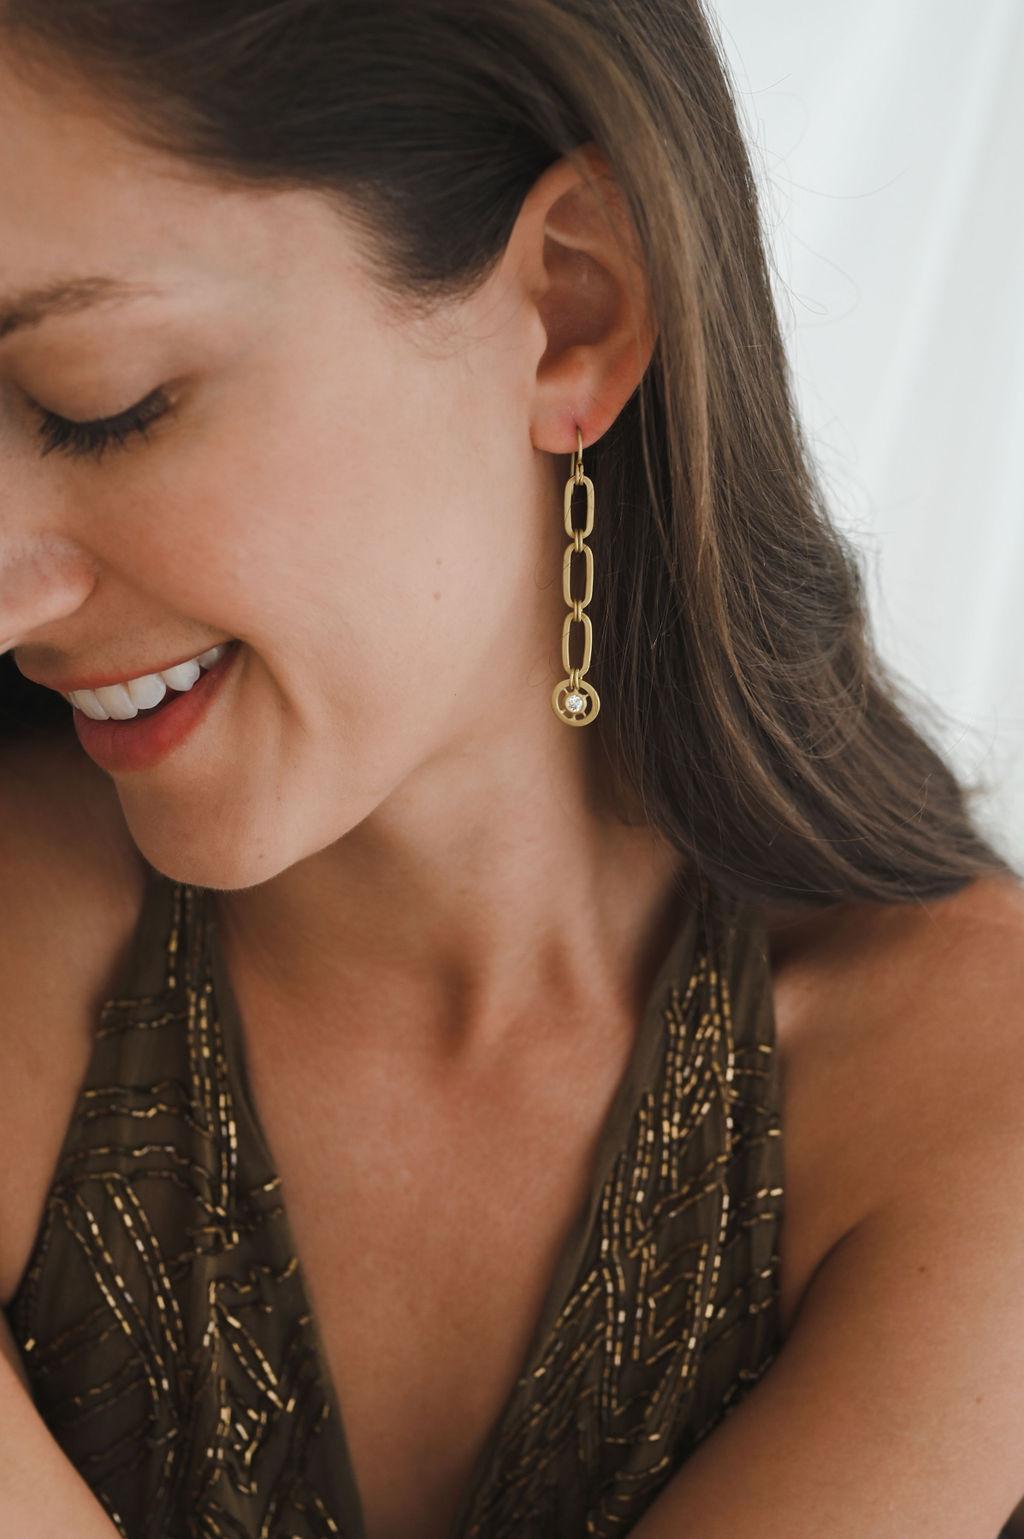 Faye Kims 18 Karat Gold Diamond Paperclip Link Earrings spiegeln ihre ikonische Büroklammer-Gliederkette wider und erhalten durch diamantene Pinwheel-Tropfen einen modernen Twist. Diese mattierten Ohrringe mit französischem Draht passen zu jeder